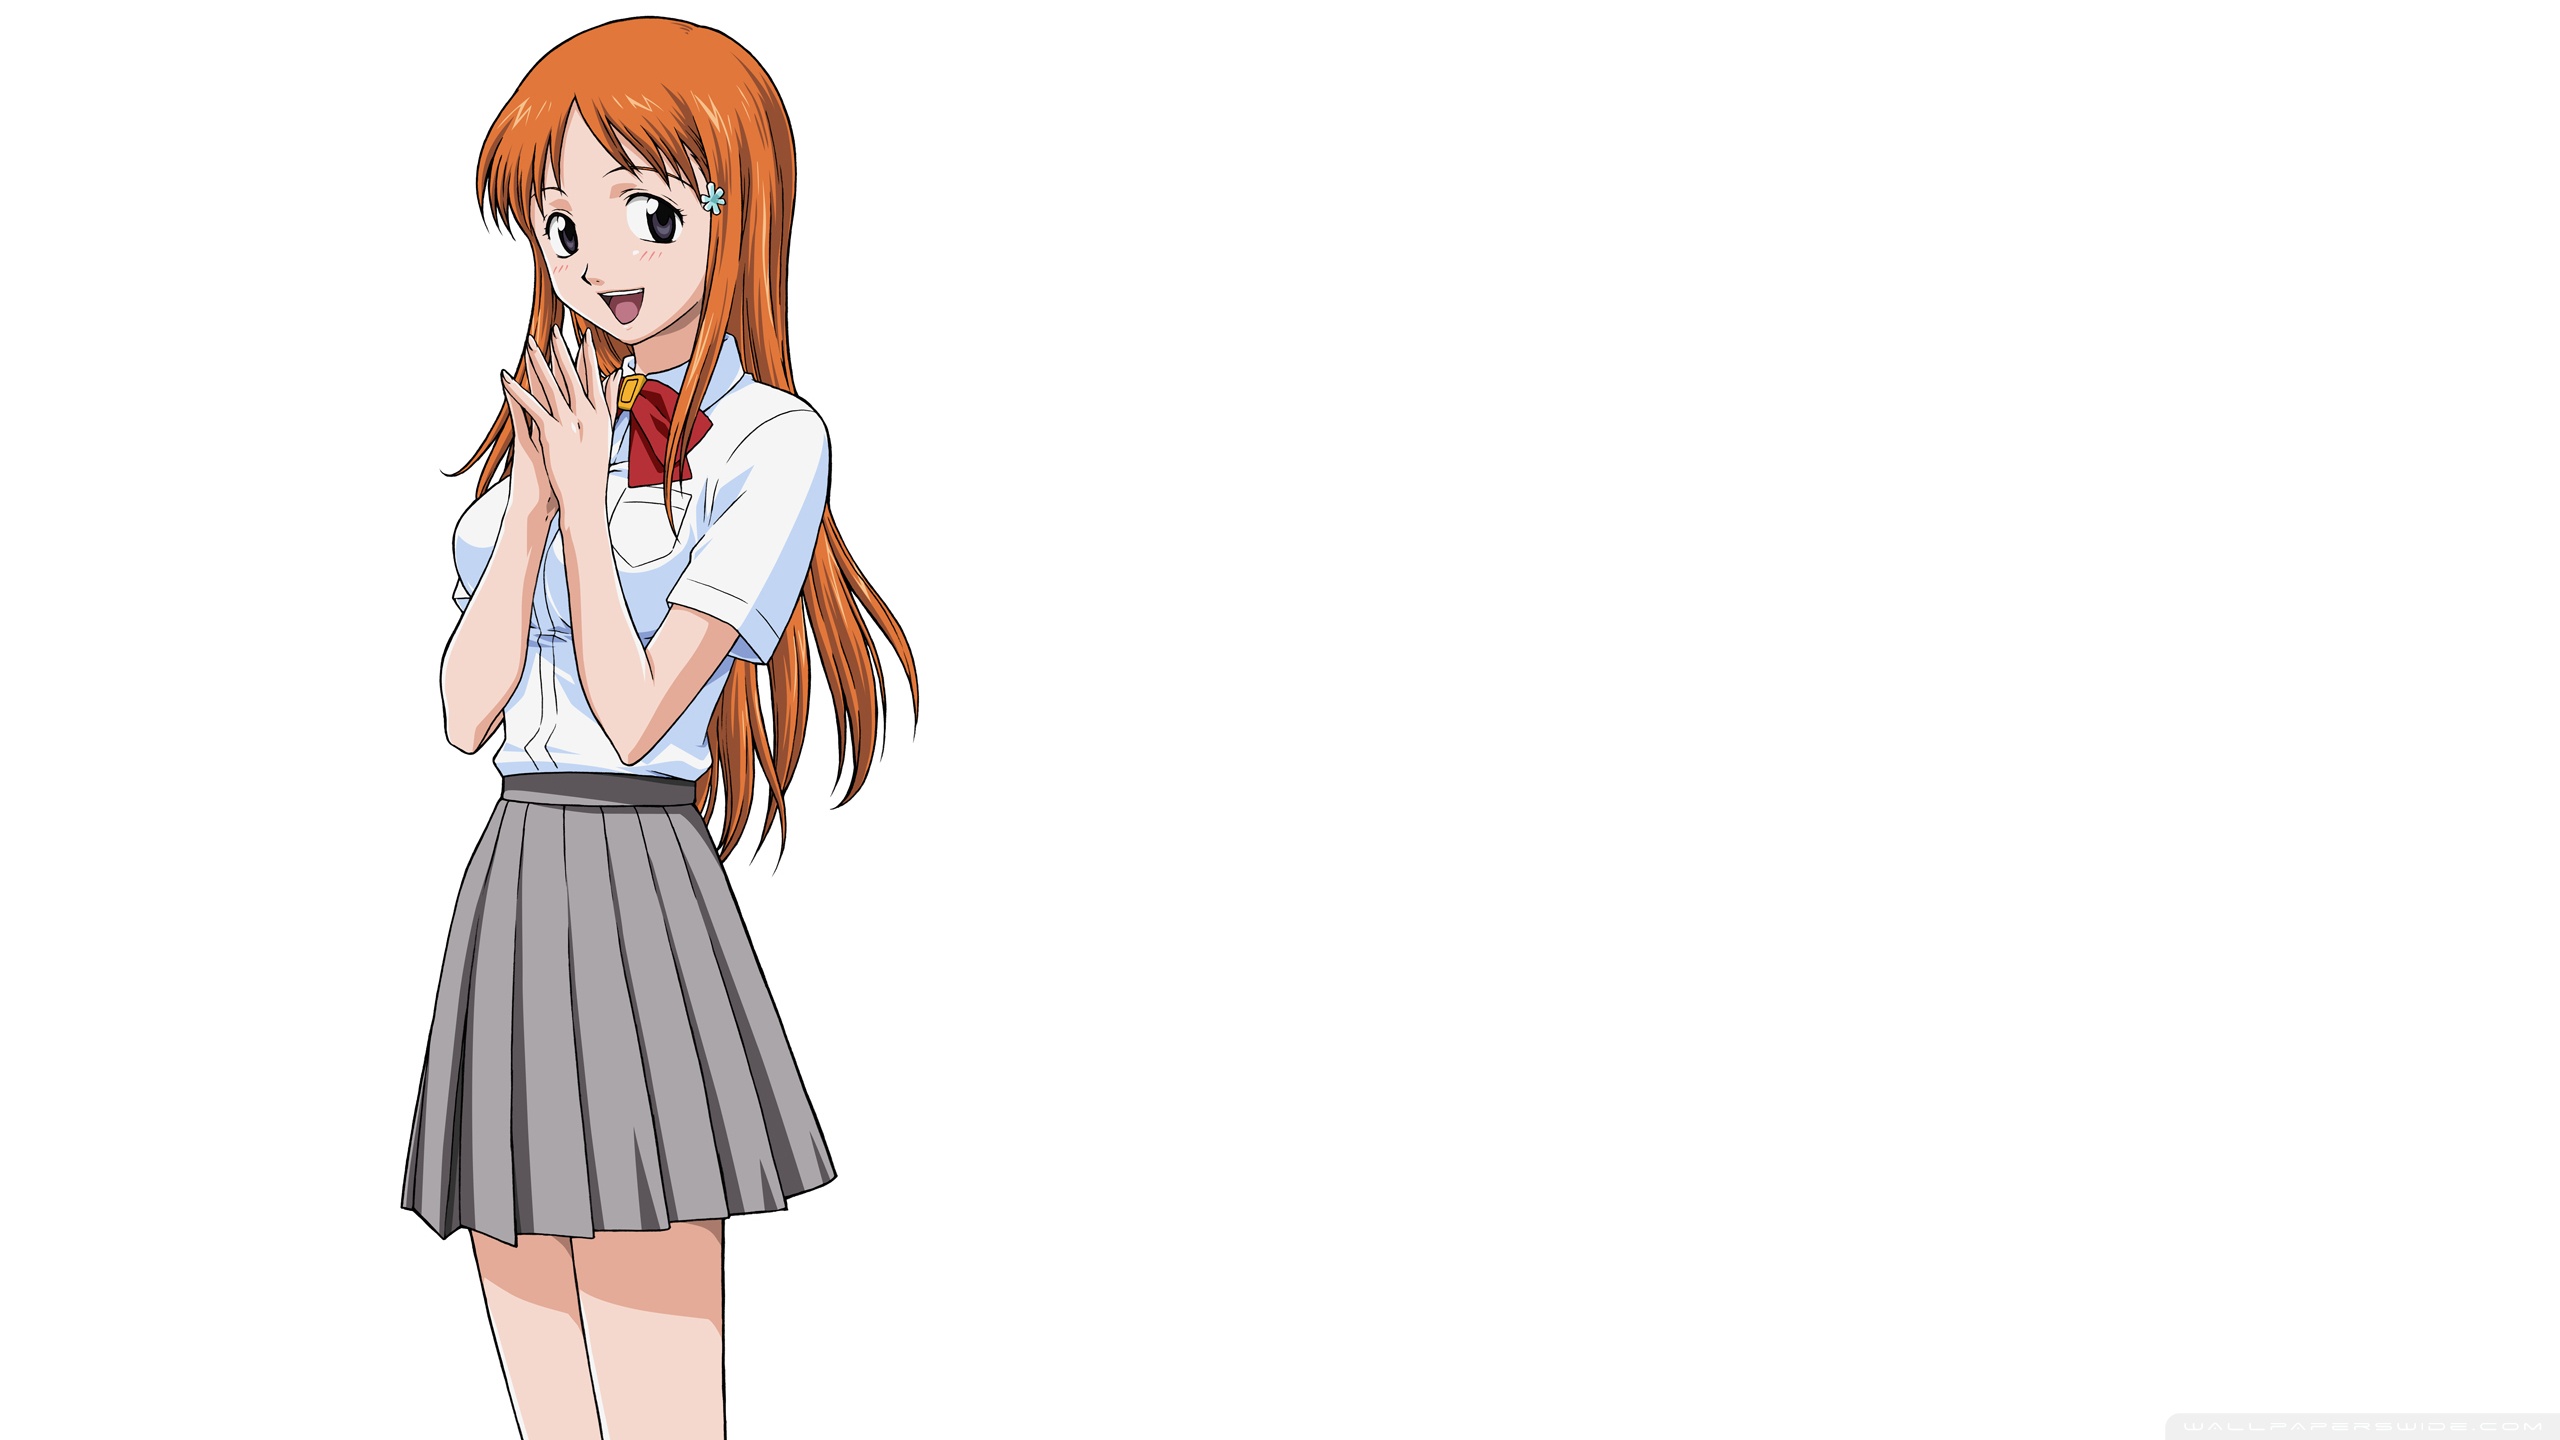 Anime Girl With Orange Hair Ultra HD Desktop Background Wallpaper for 4K UHD TV, Tablet